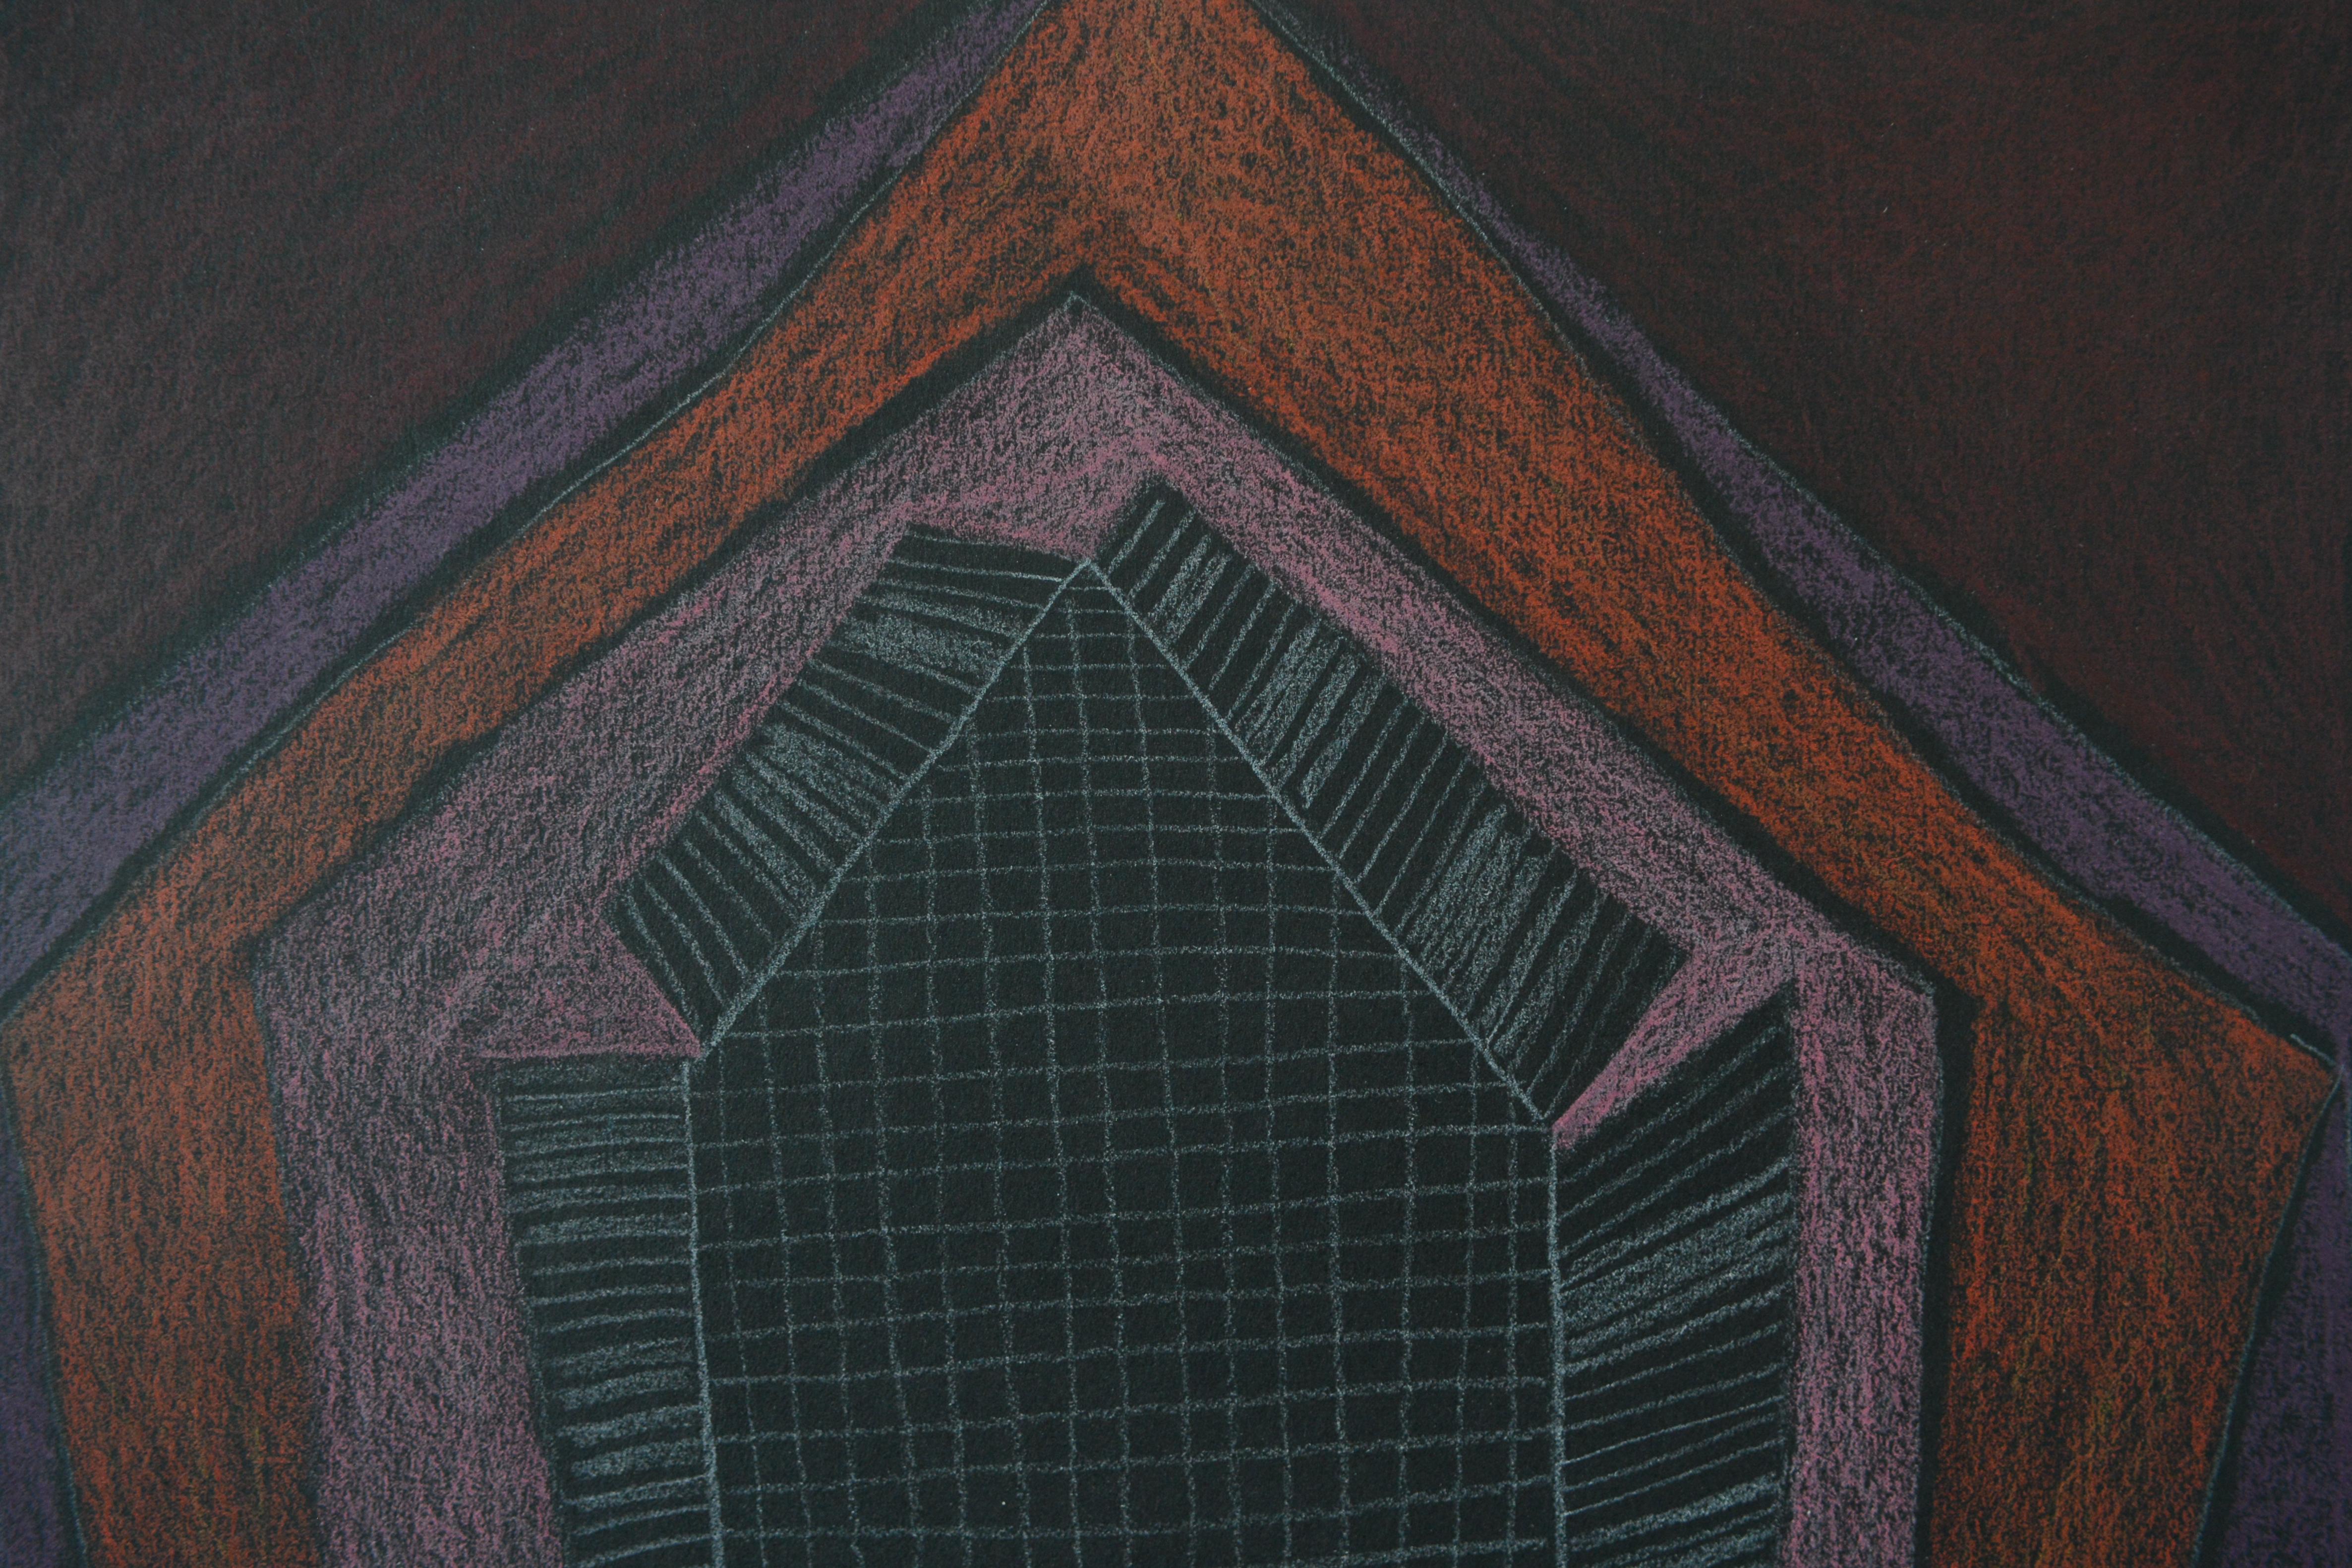 Eröffnung der Häuser am Black 7, 2022. Farbstift auf schwarzem Papier, 20 x 20 cm

Nicky Marais (geb. 1962) ist ein namibischer Künstler, Pädagoge und Aktivist. Marais ist bekannt für ihre abstrakten Kunstwerke, die ein persönliches Vokabular aus